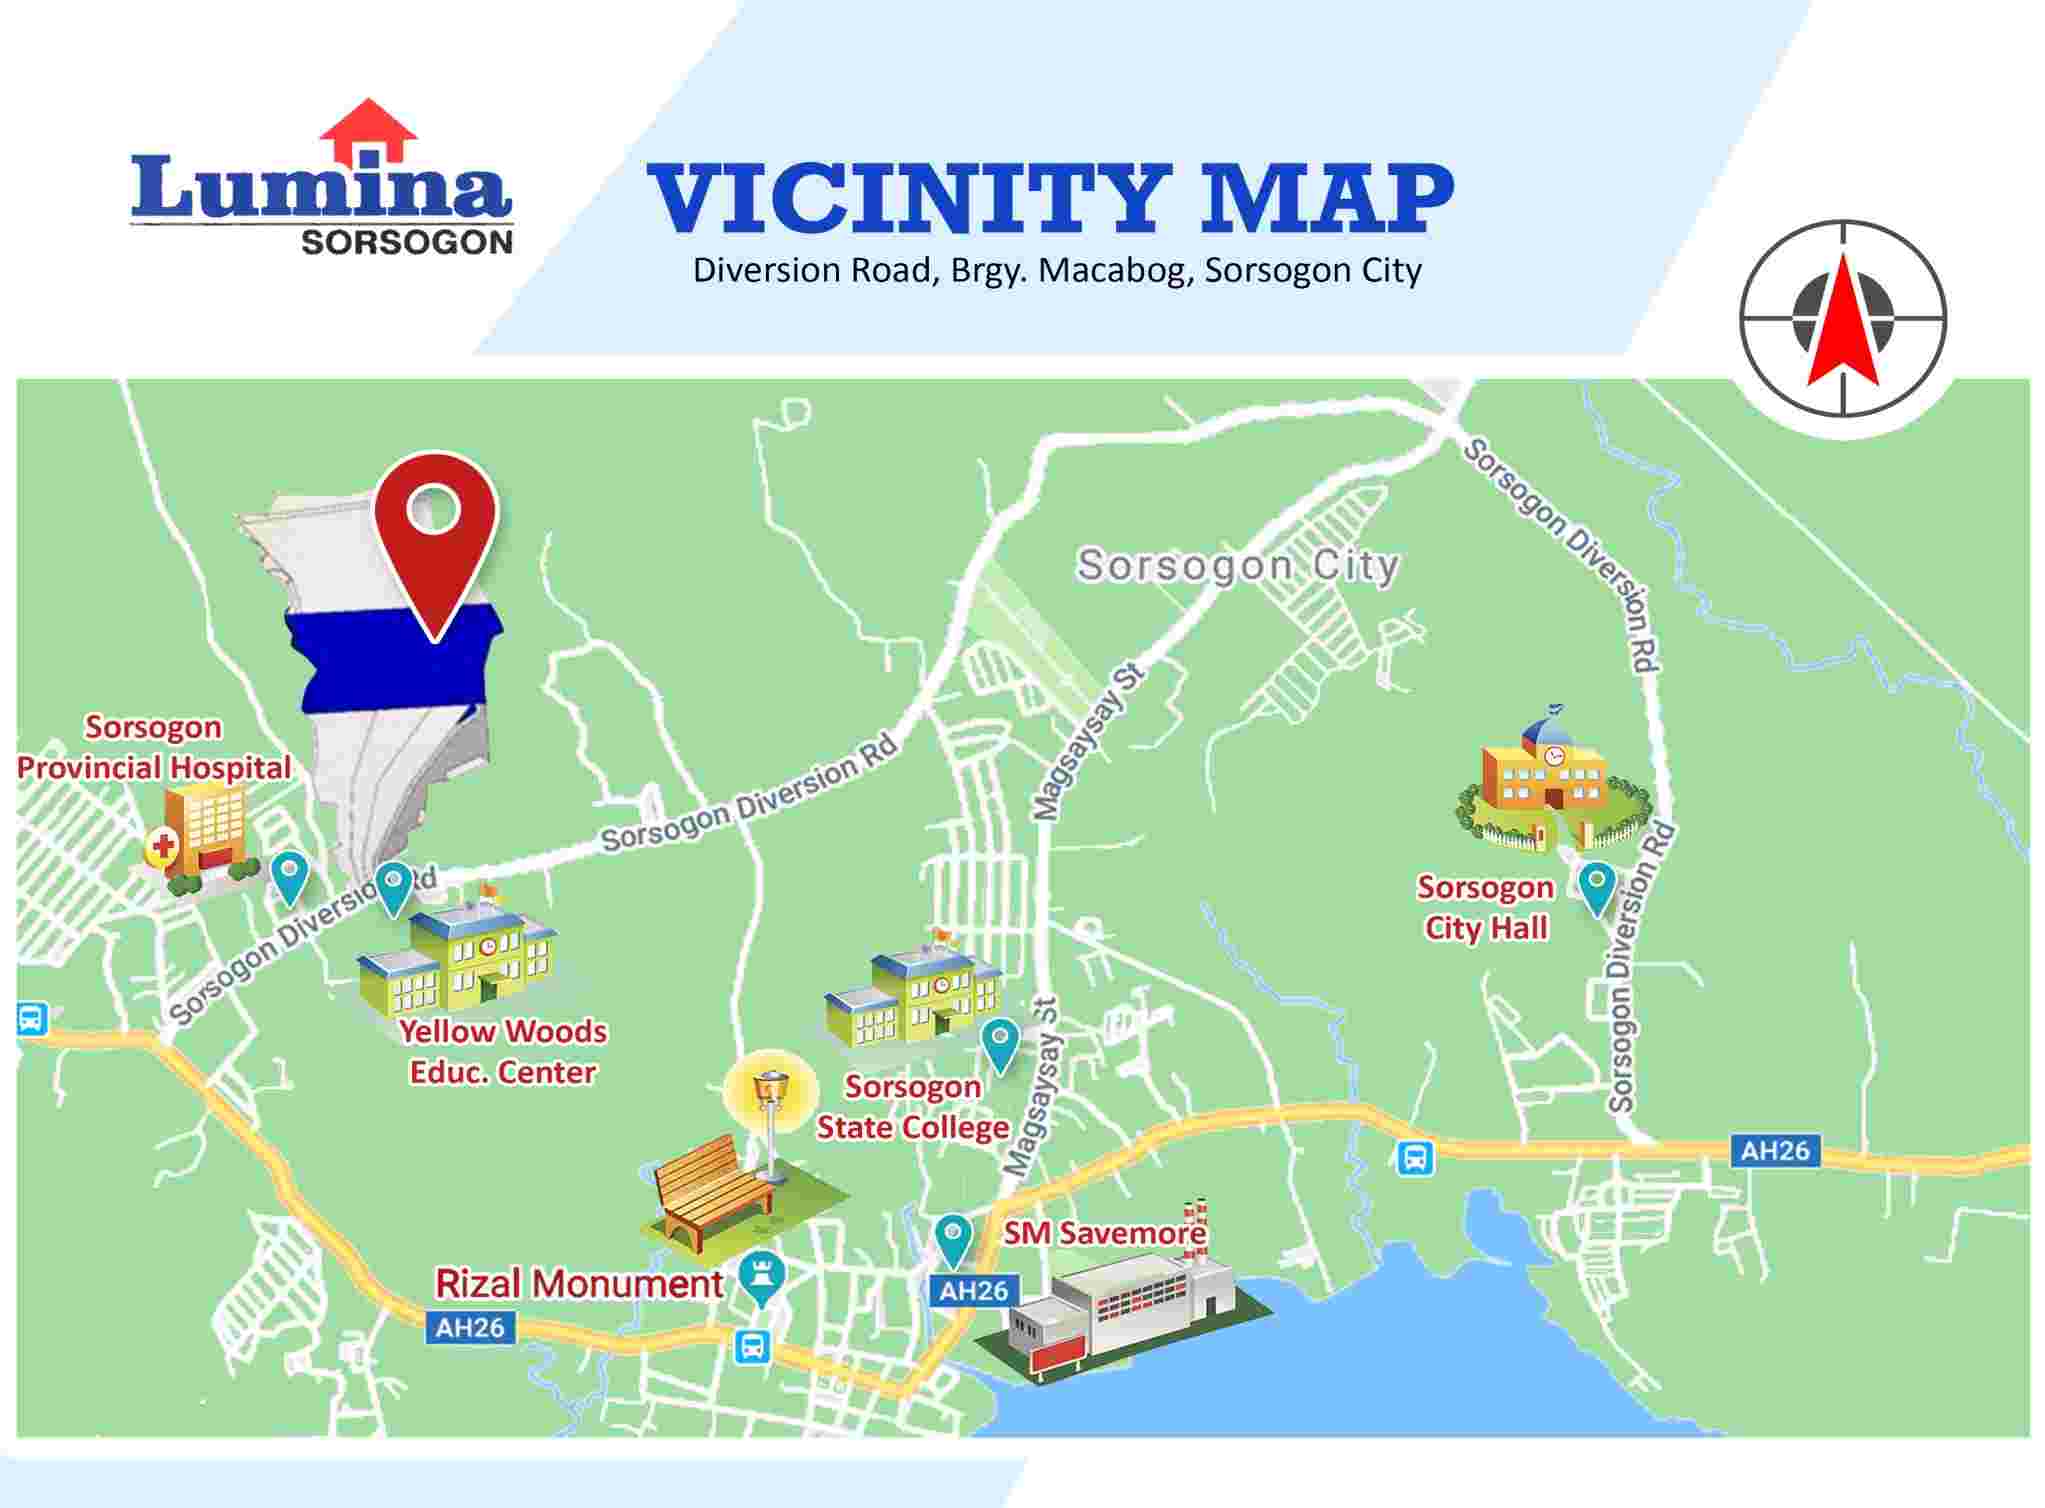 Vicinity-Map-1636441769.jpeg